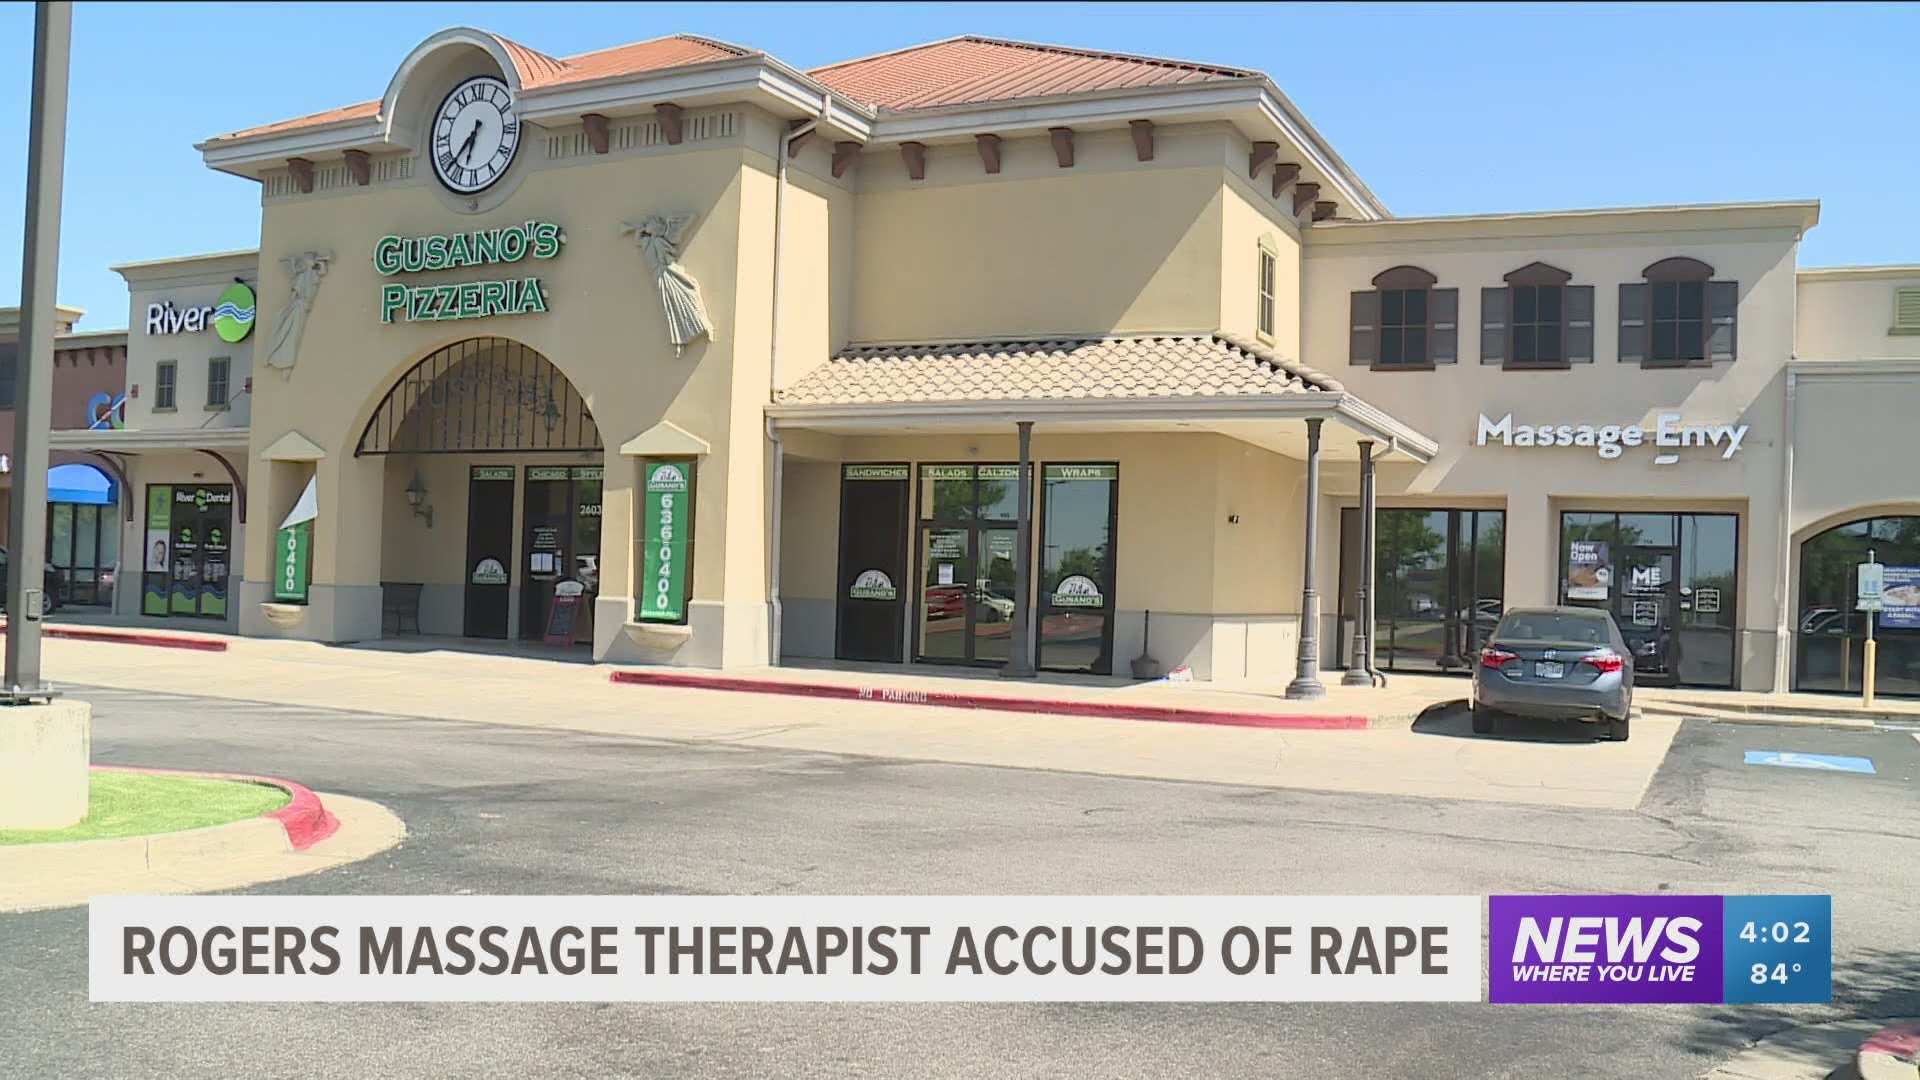 Rogers massage therapist accused of rape